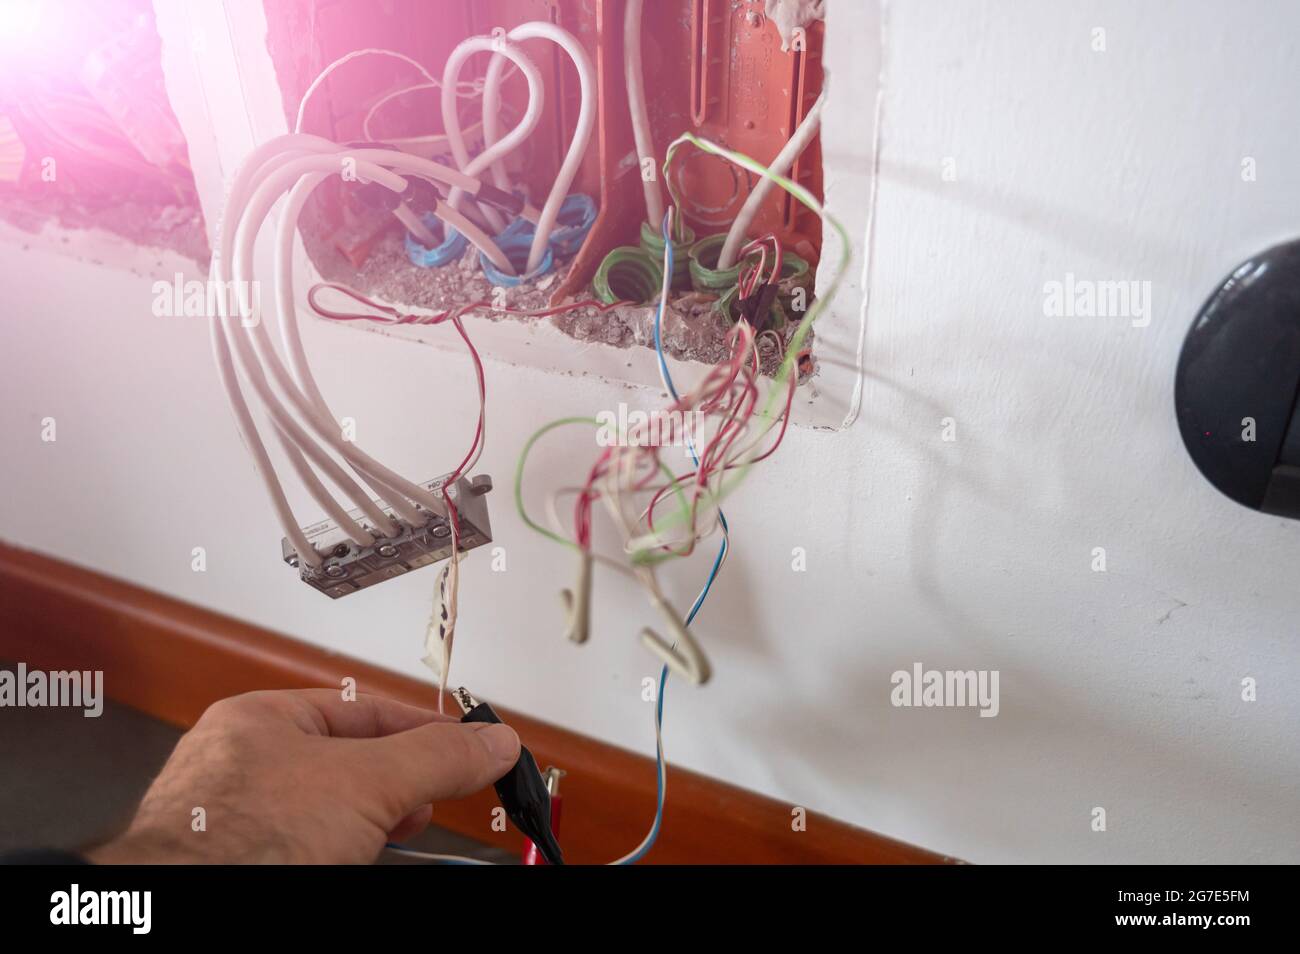 Cables Eléctricos De Colores Que Salen De Una Caja De Empalmes Abierta,  Durante La Renovación De Un Apartamento. Cables Eléctricos Que Salen De  Tubos Corrugados Dentro De La Caja De Empalmes Colocada